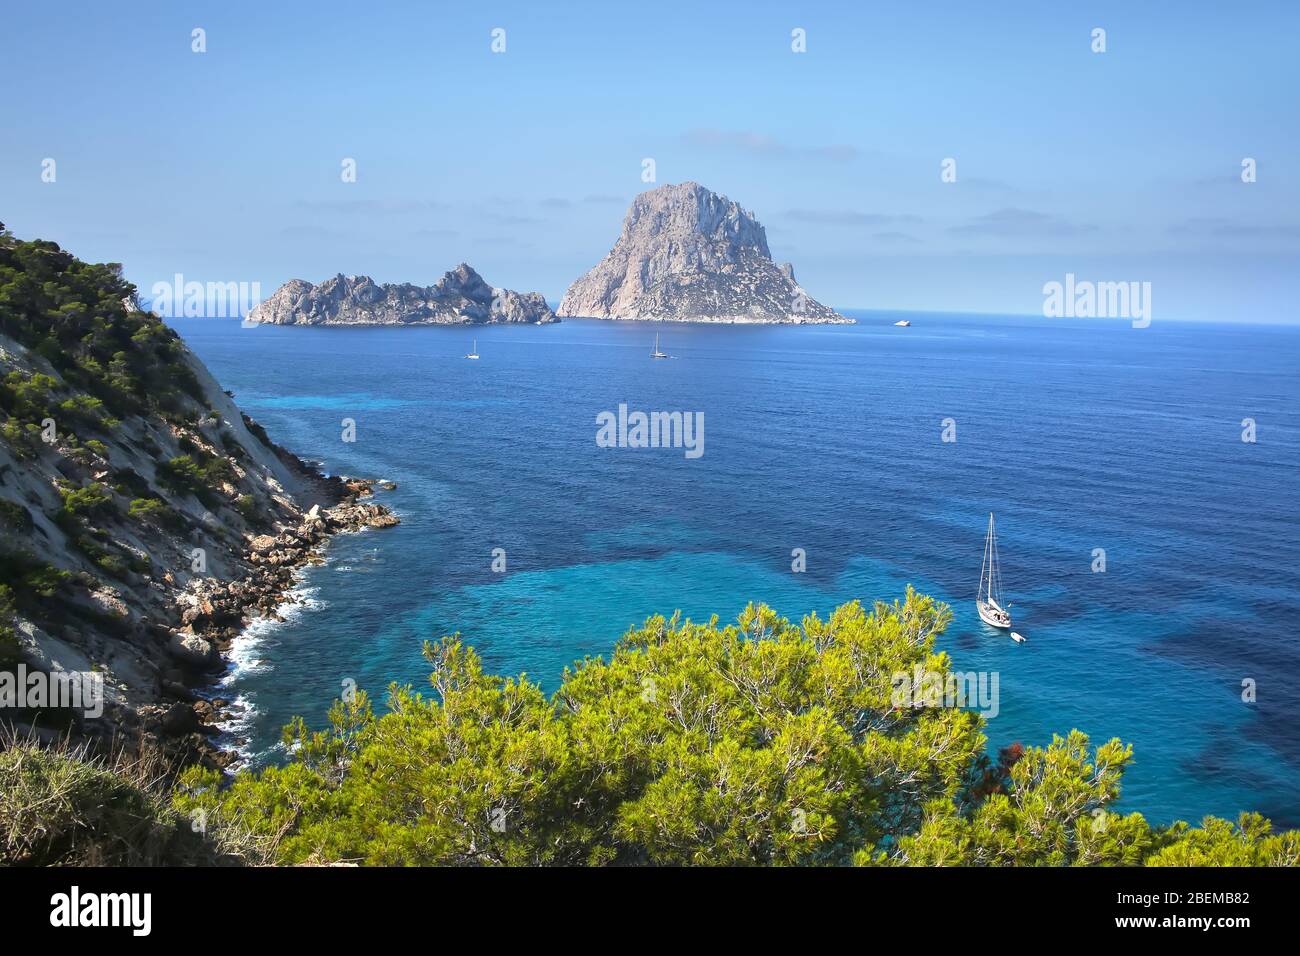 Vue de la côte sud d'Ibiza montrant l'île rock es Vedra. Magnifique paysage avec falaises et eau turquoise. Îles Balaric, Espagne. Banque D'Images